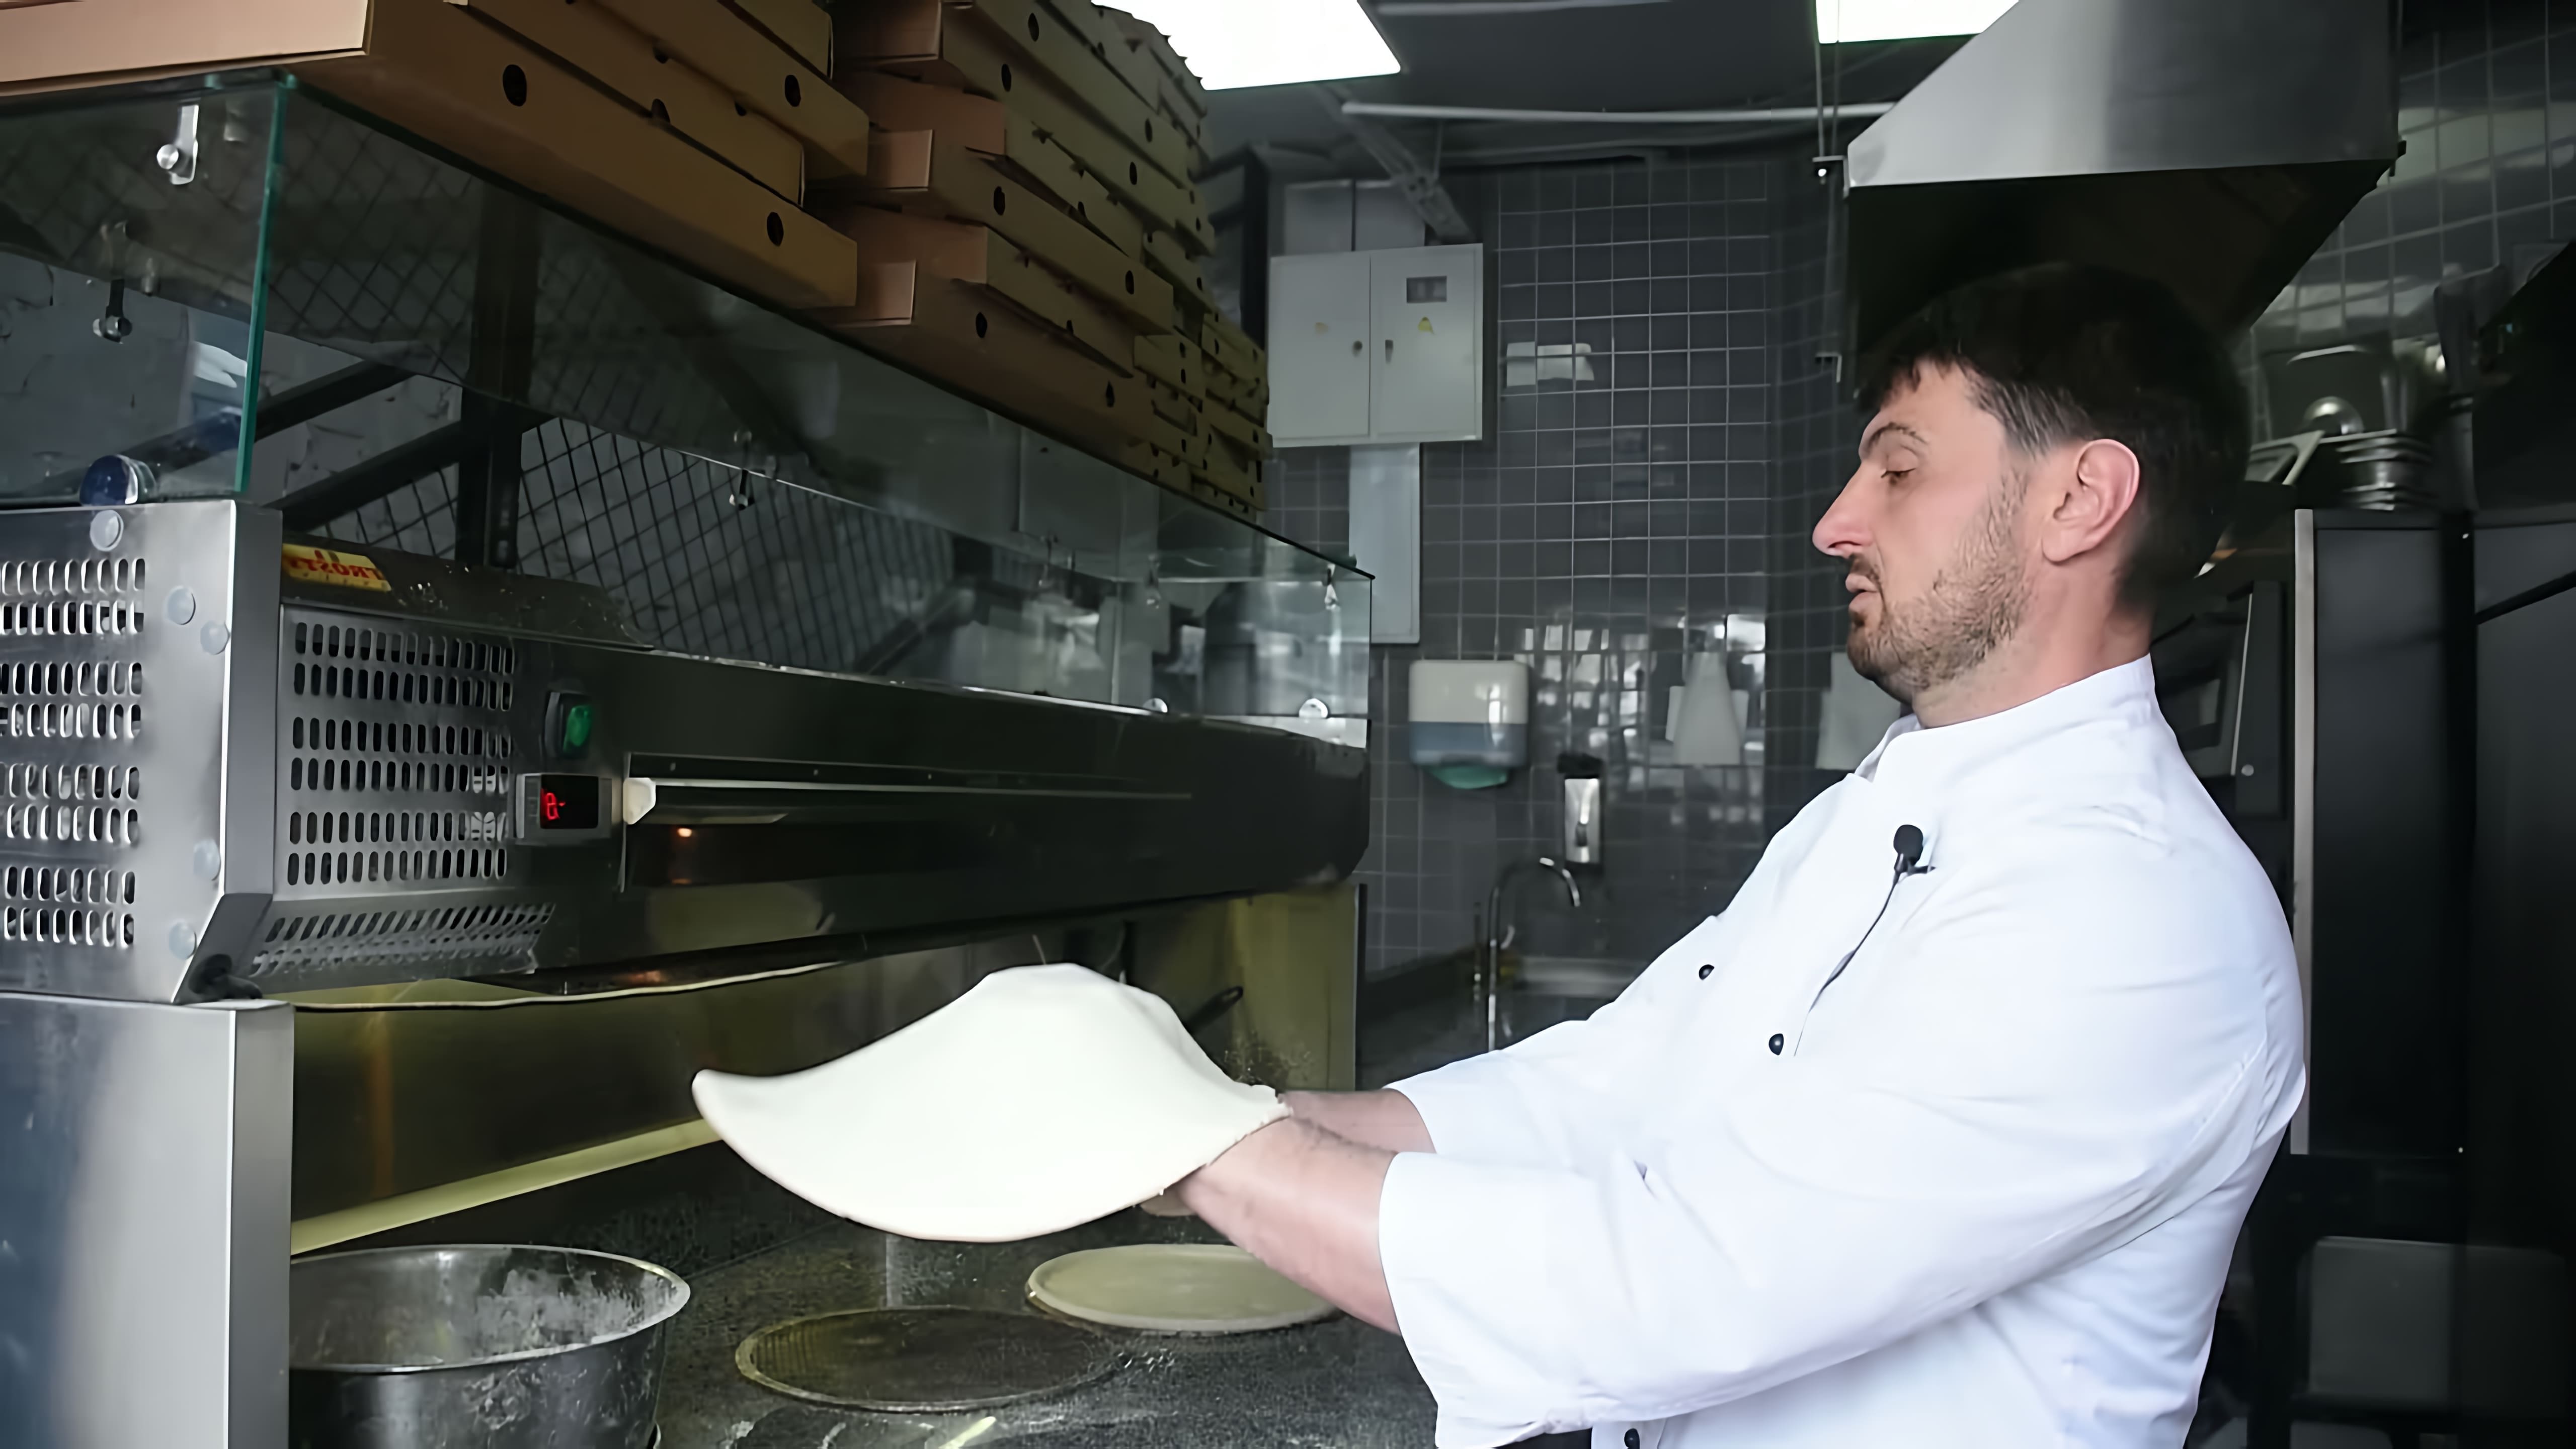 В этом видео рассказывается о том, как правильно укладывать ингредиенты на пиццу